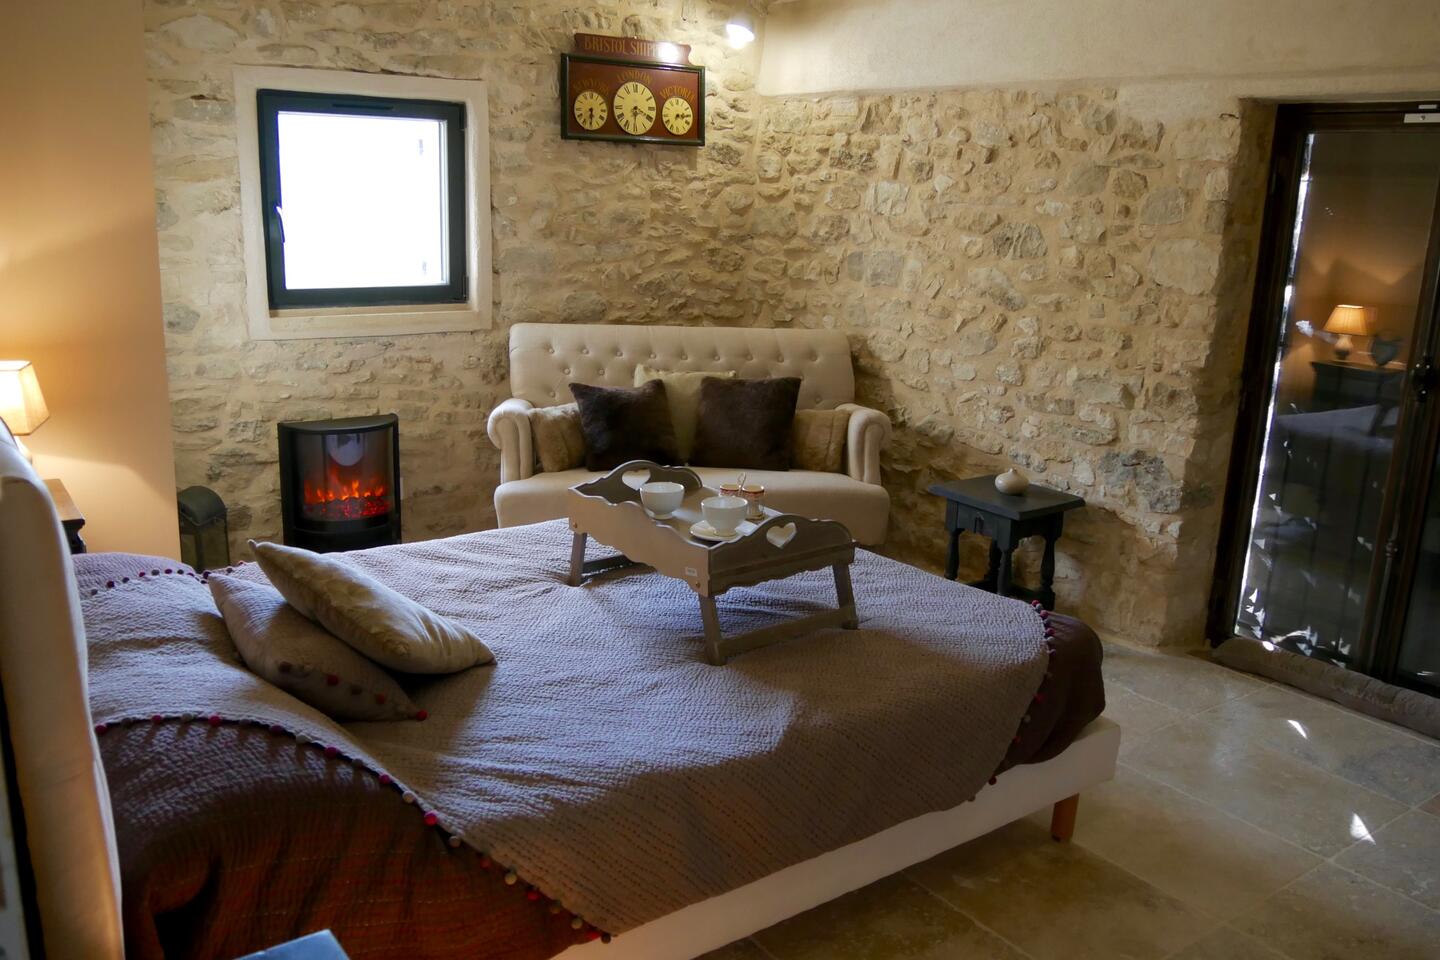 27 - La Roque sur Pernes: Villa: Interior - Bedroom - Annex